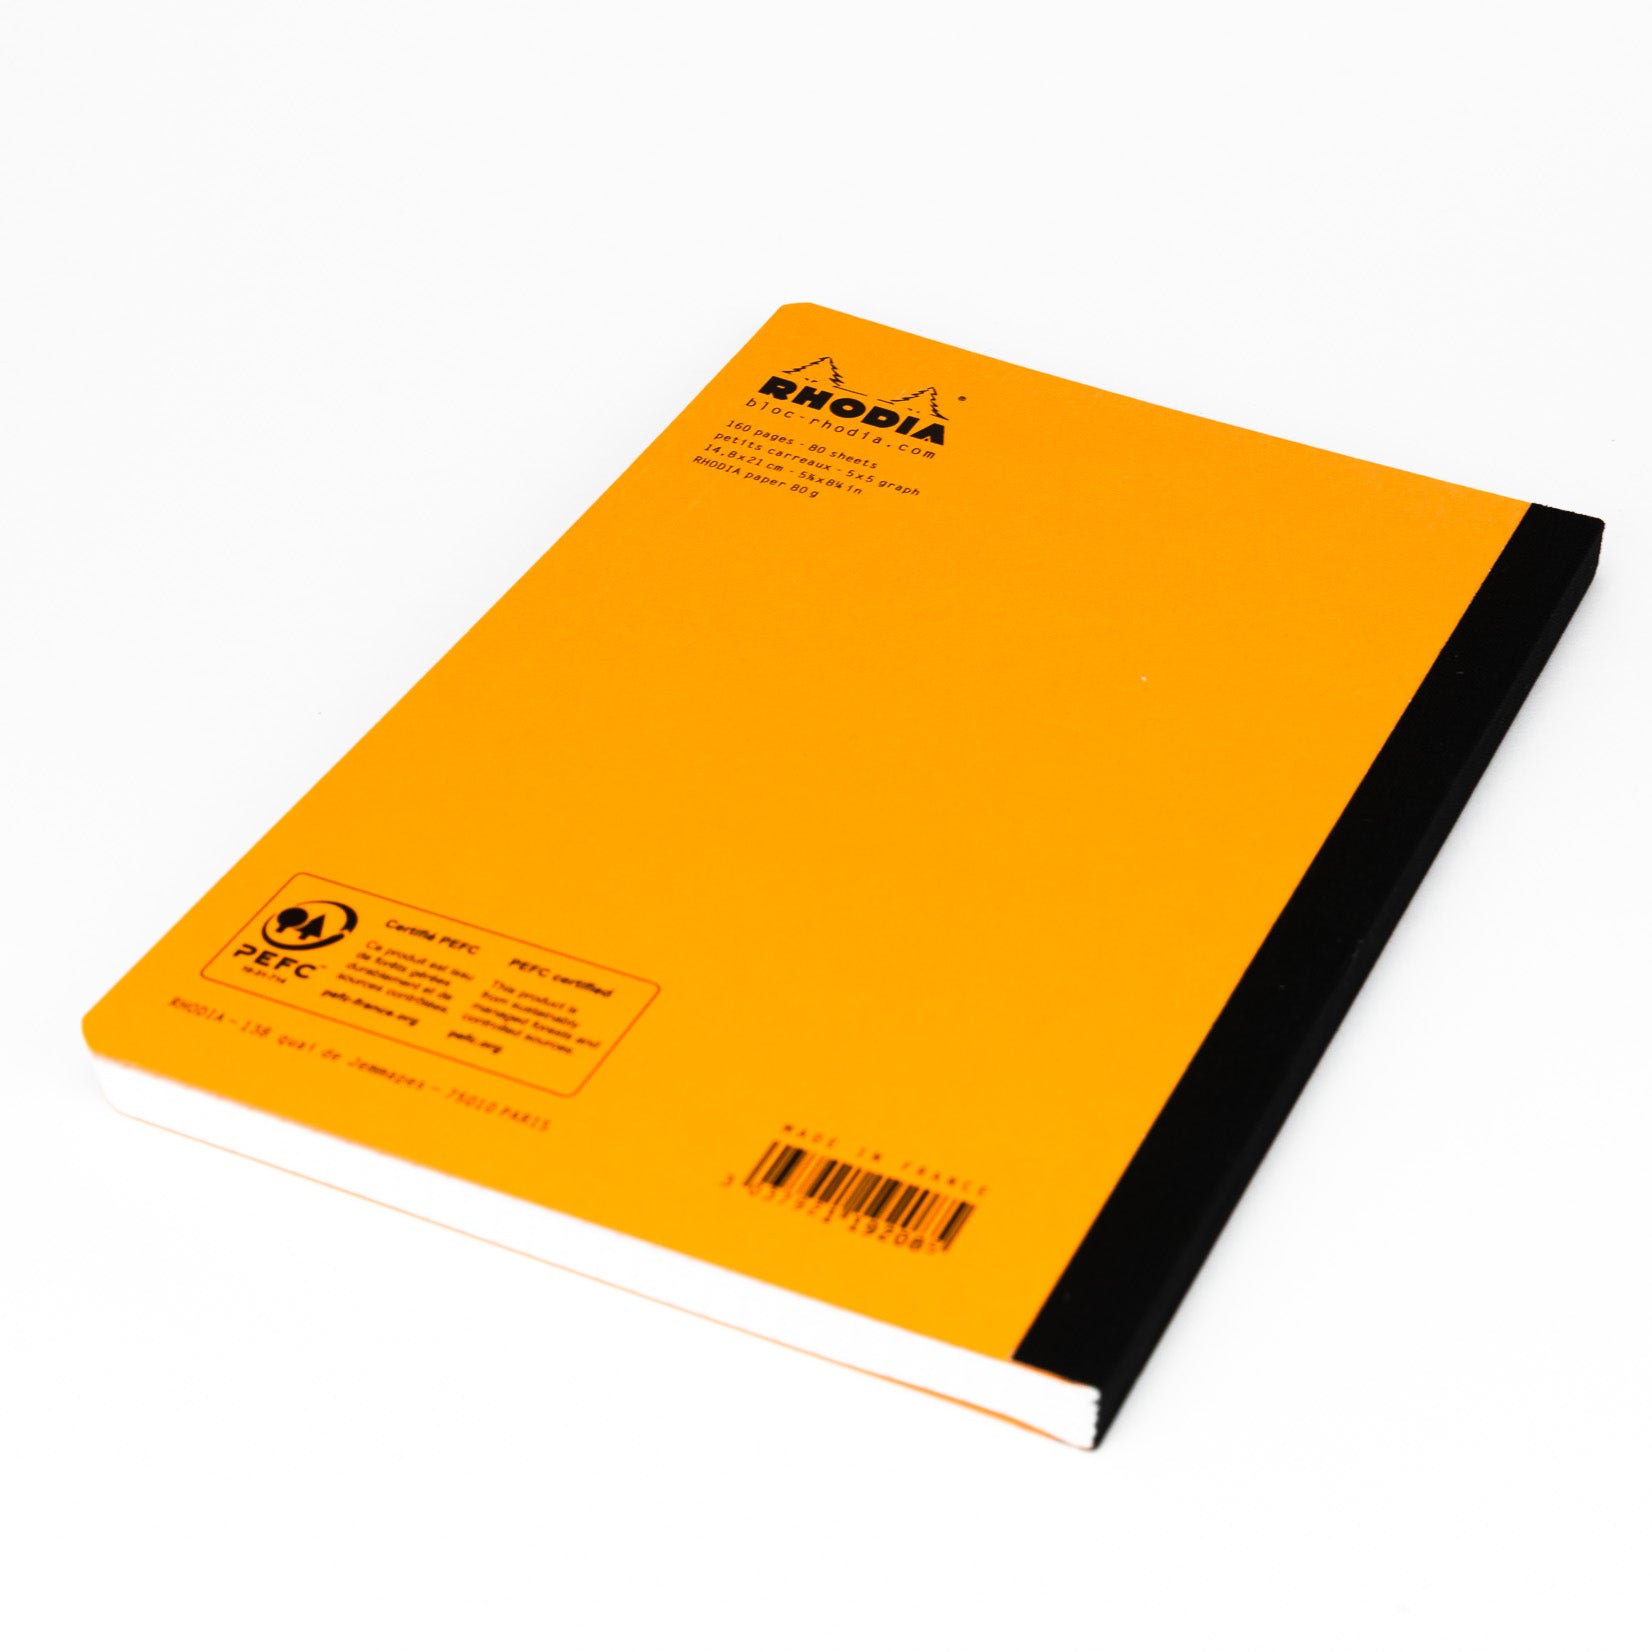 Rhodia Composition Notebook Notizbuch orange A5 kariert